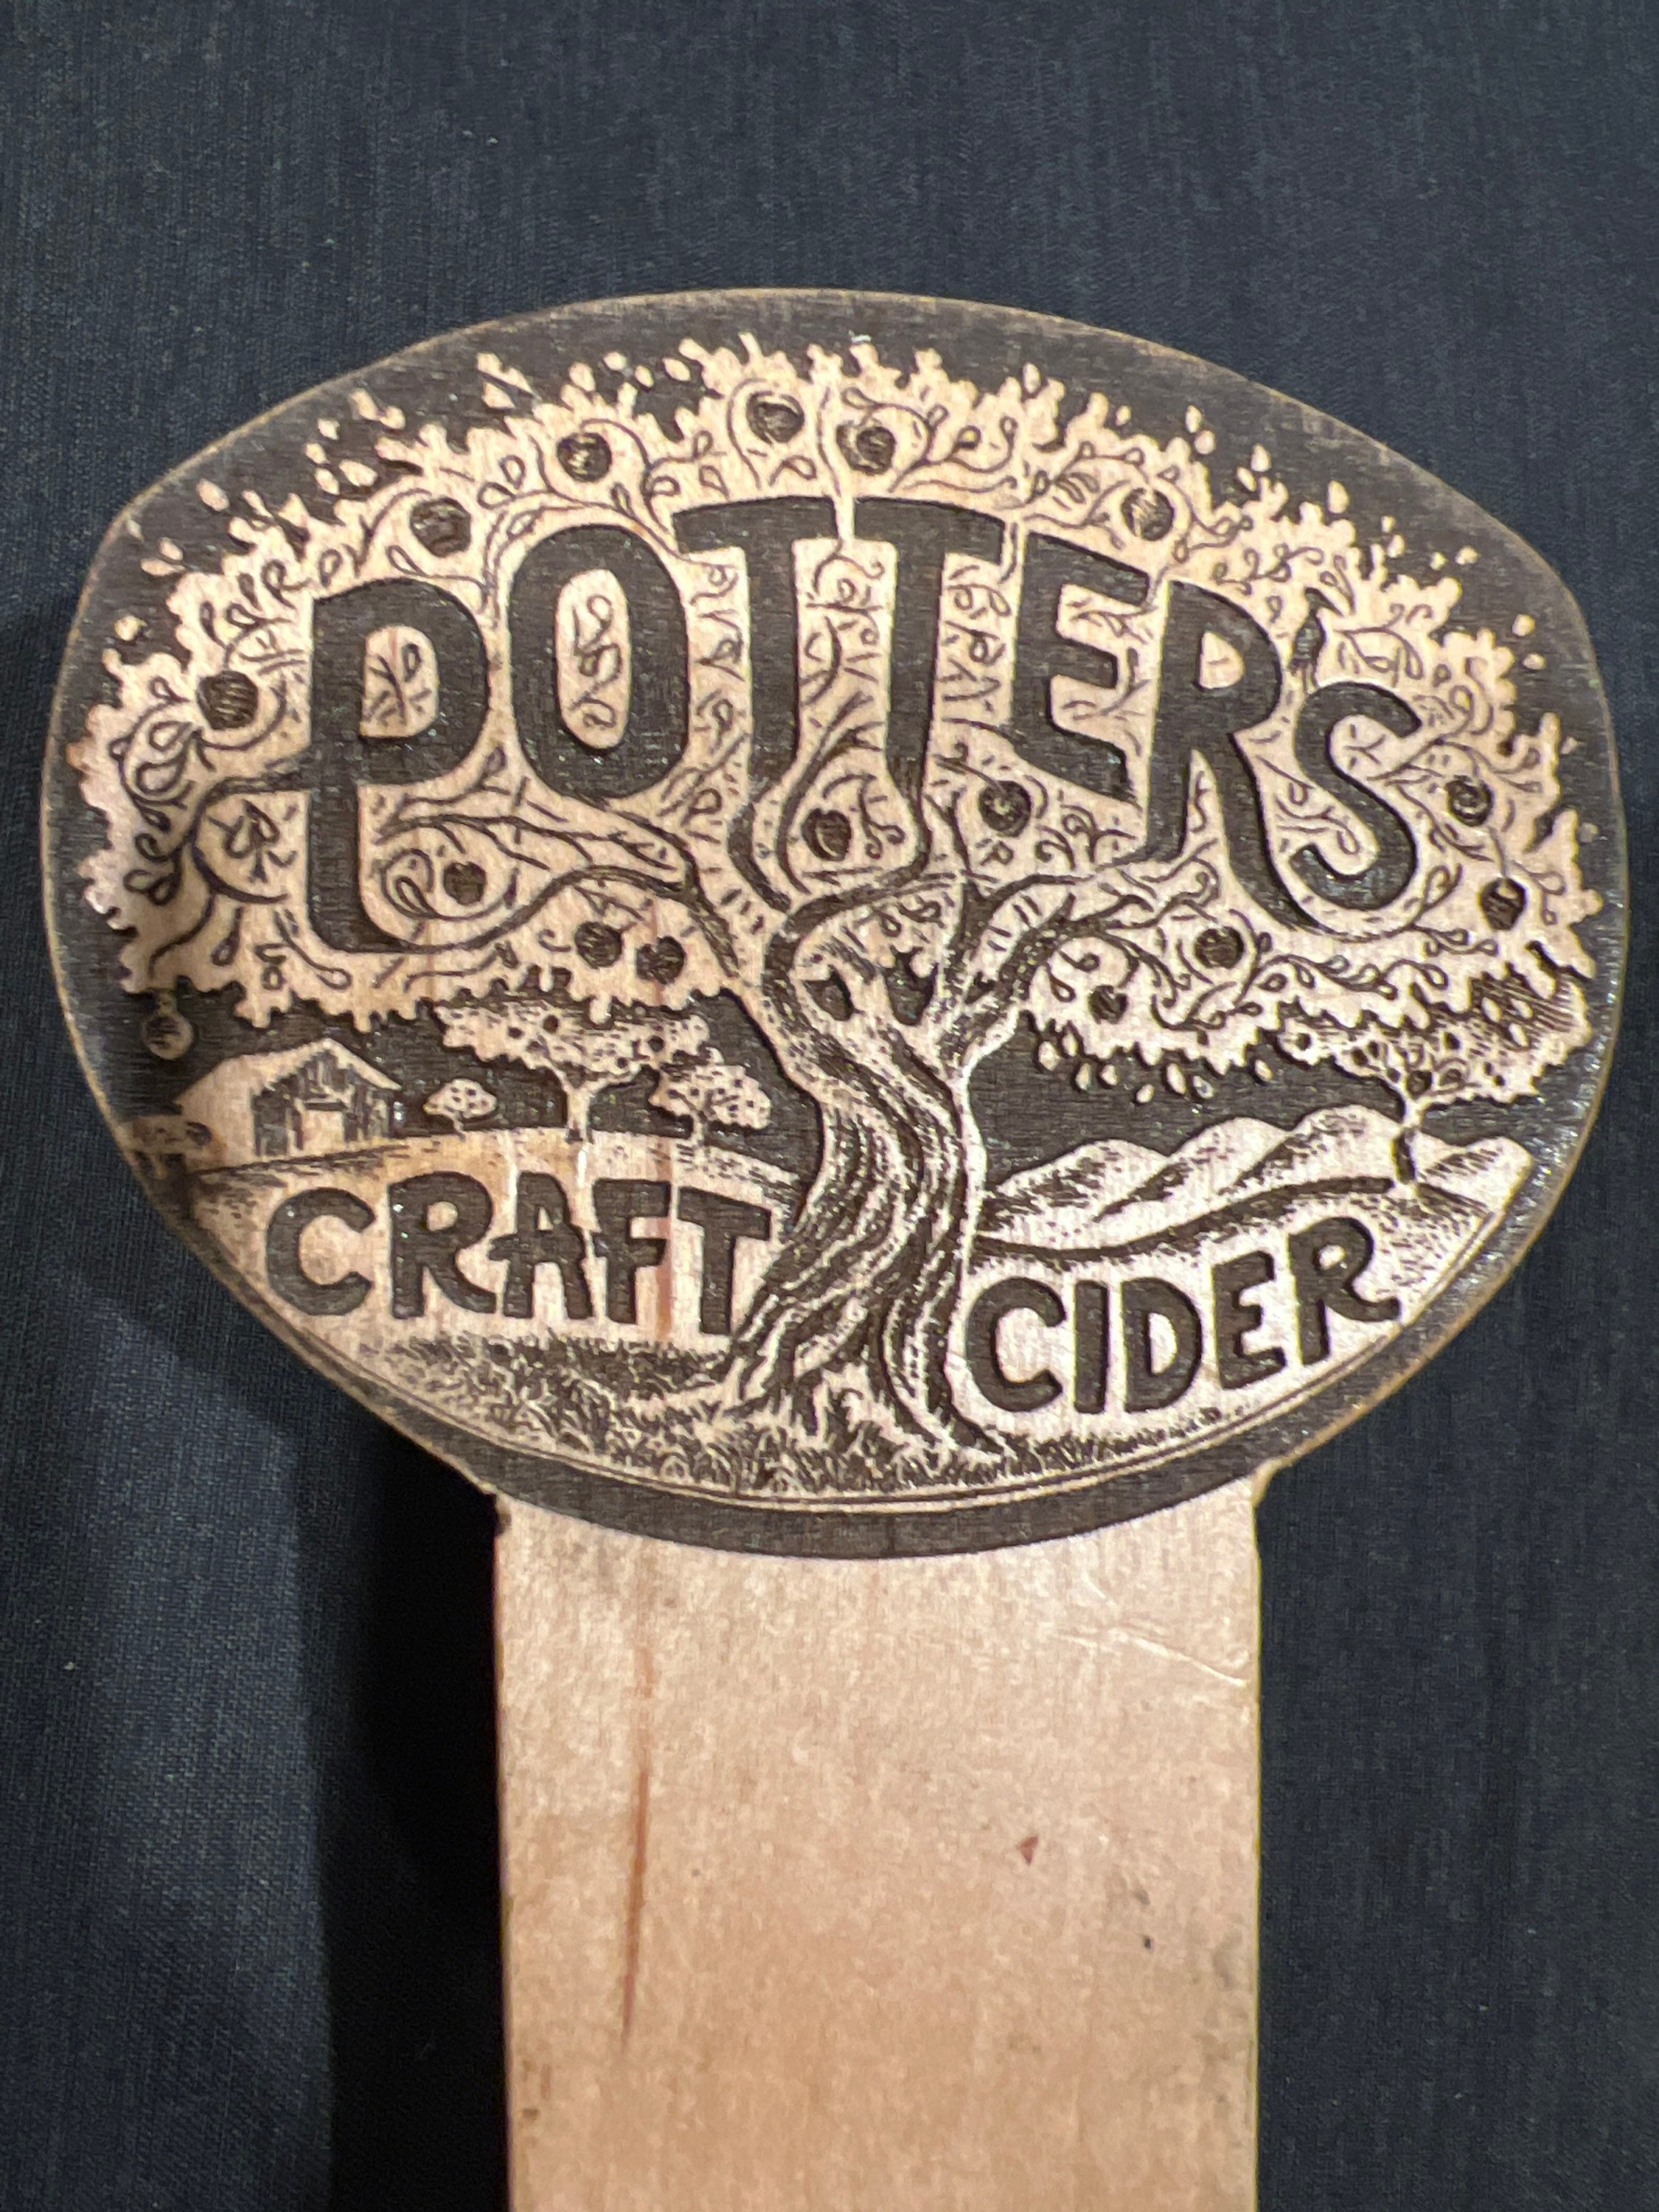 Potter's Craft Cider, Cider